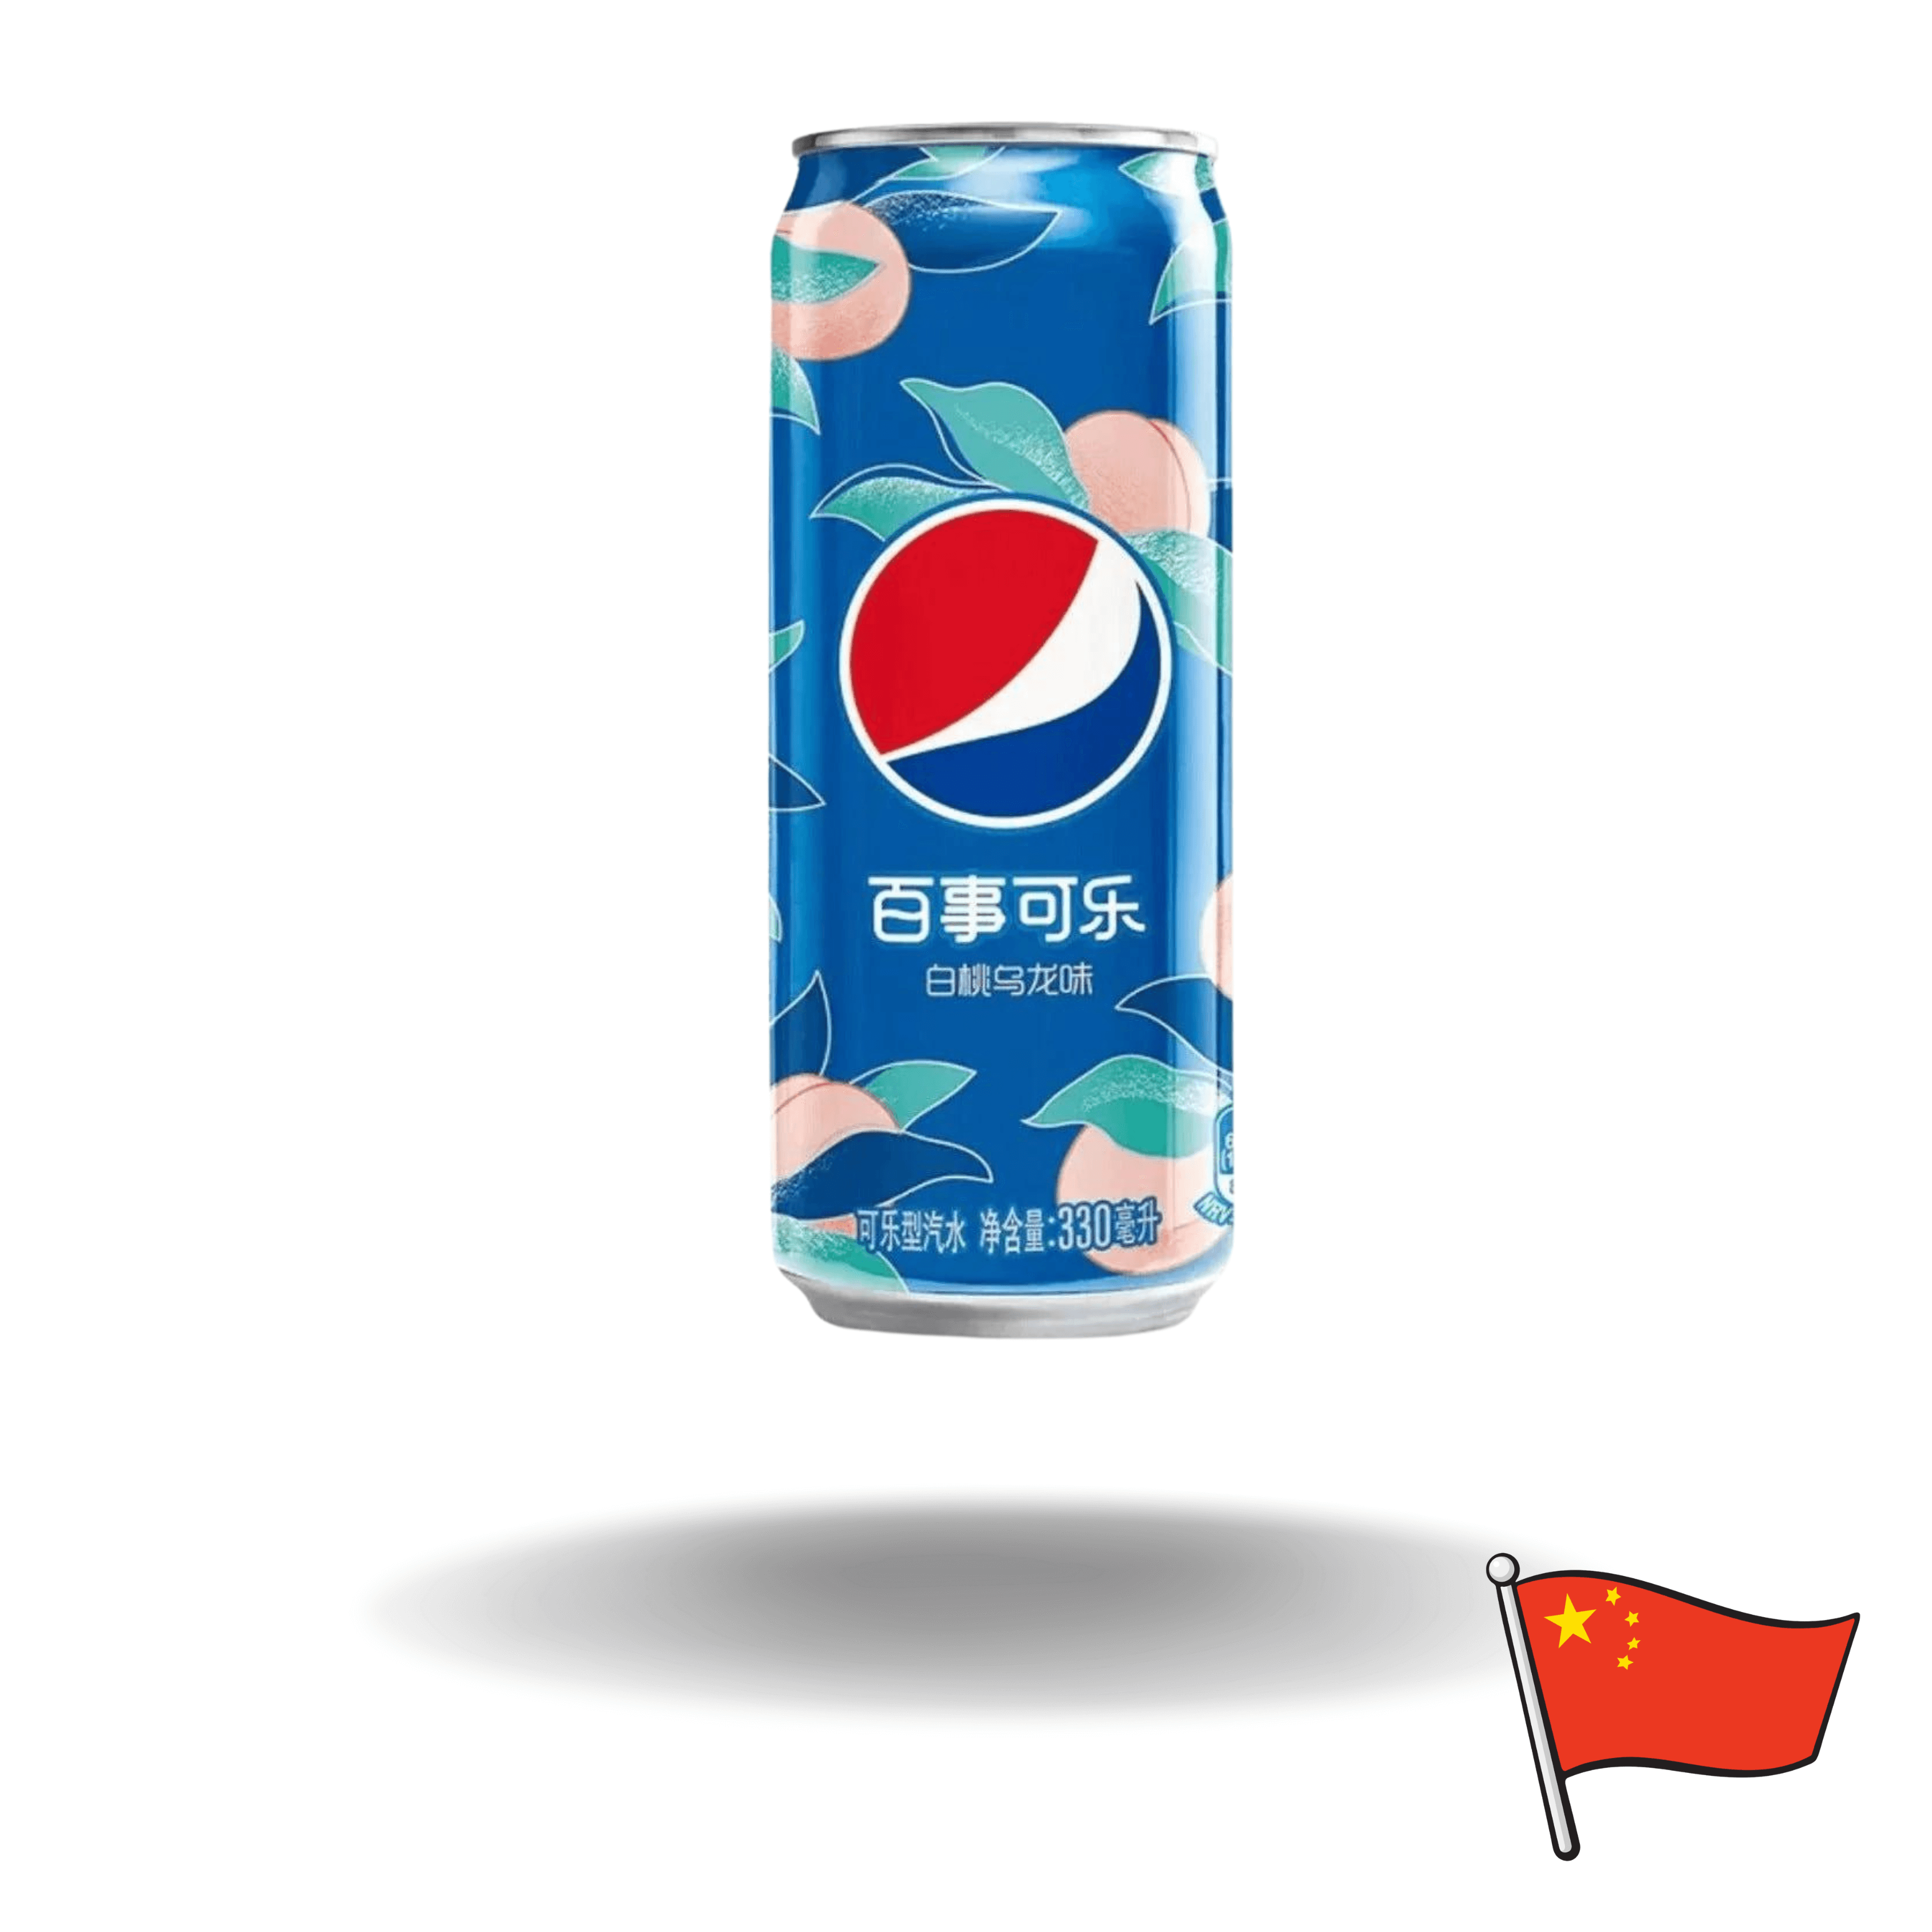 Pepsi's "White Peach Oolong" präsentiert eine exklusive Geschmacksrichtung, speziell für den chinesischen Markt entwickelt!